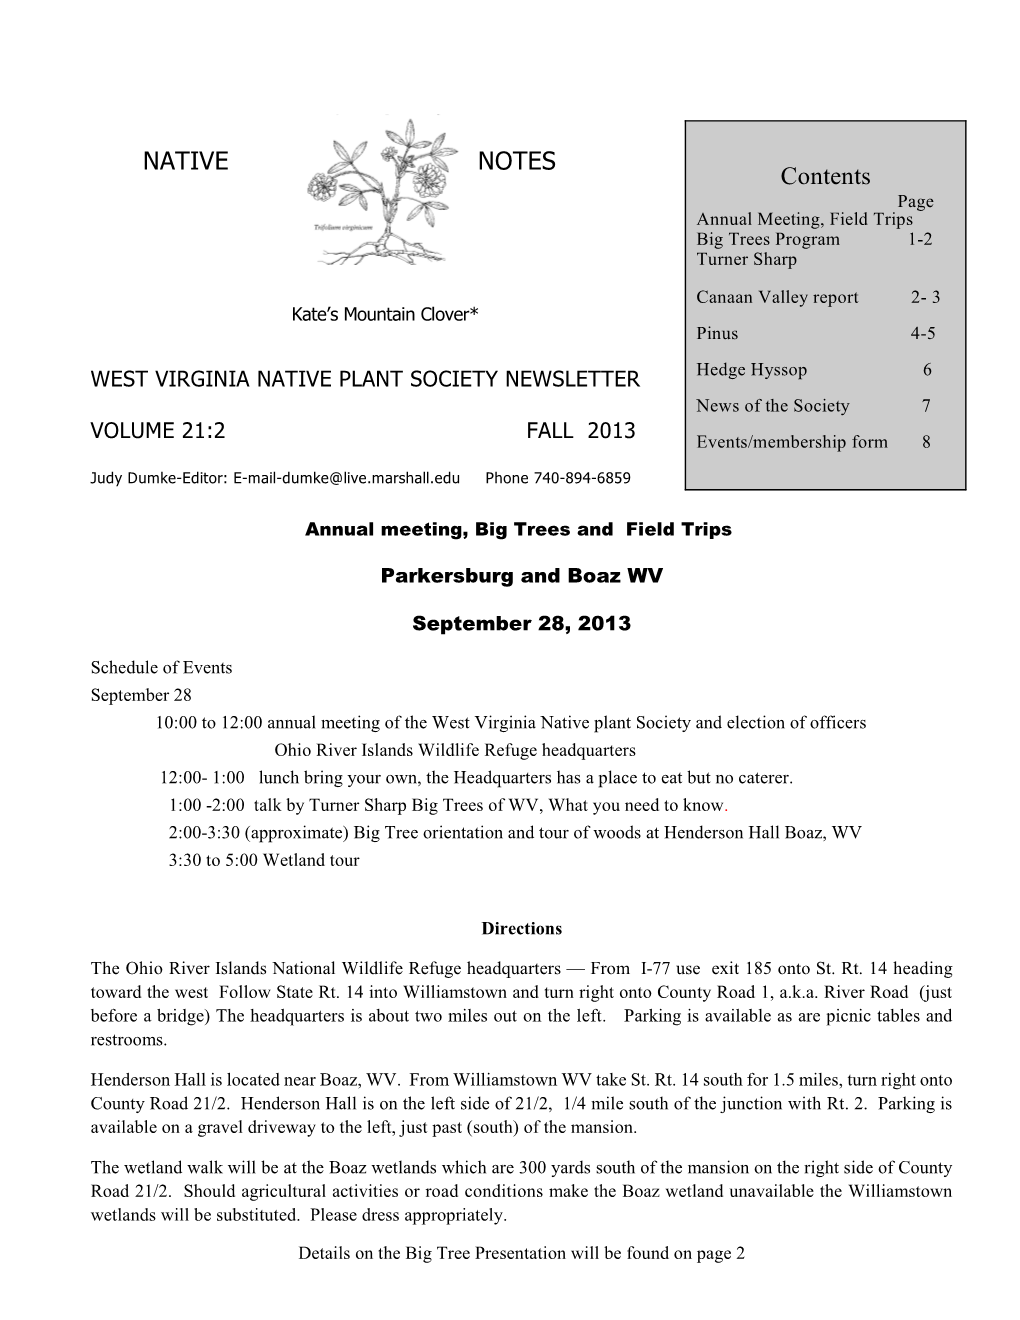 Fall 2013 (21:2) (PDF)